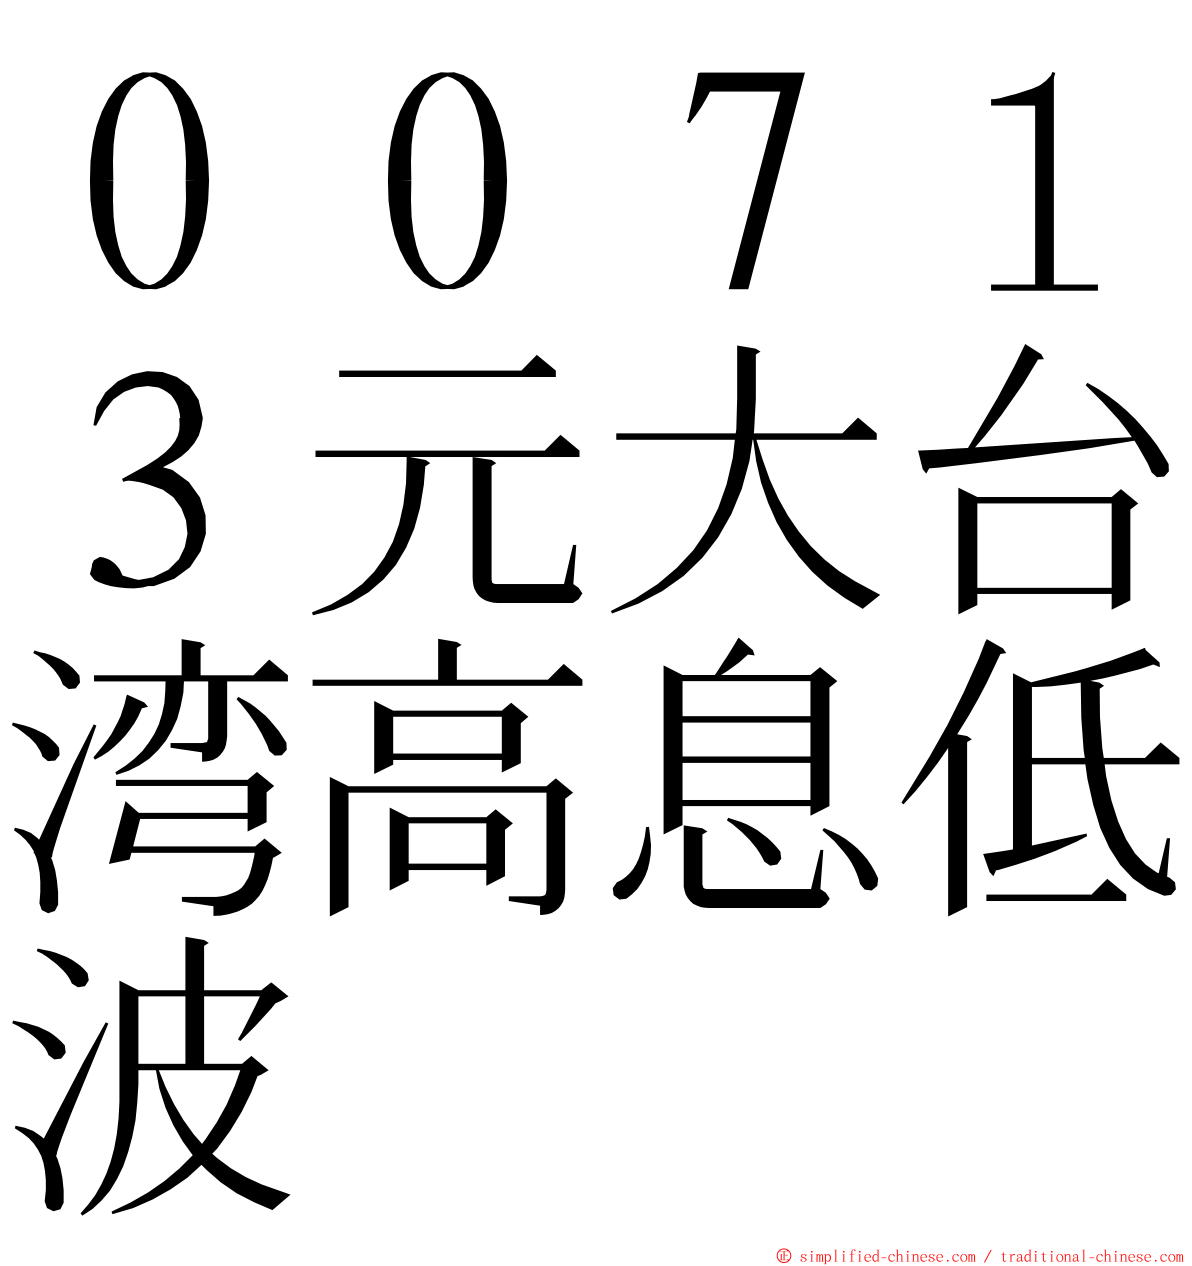 ００７１３元大台湾高息低波 ming font